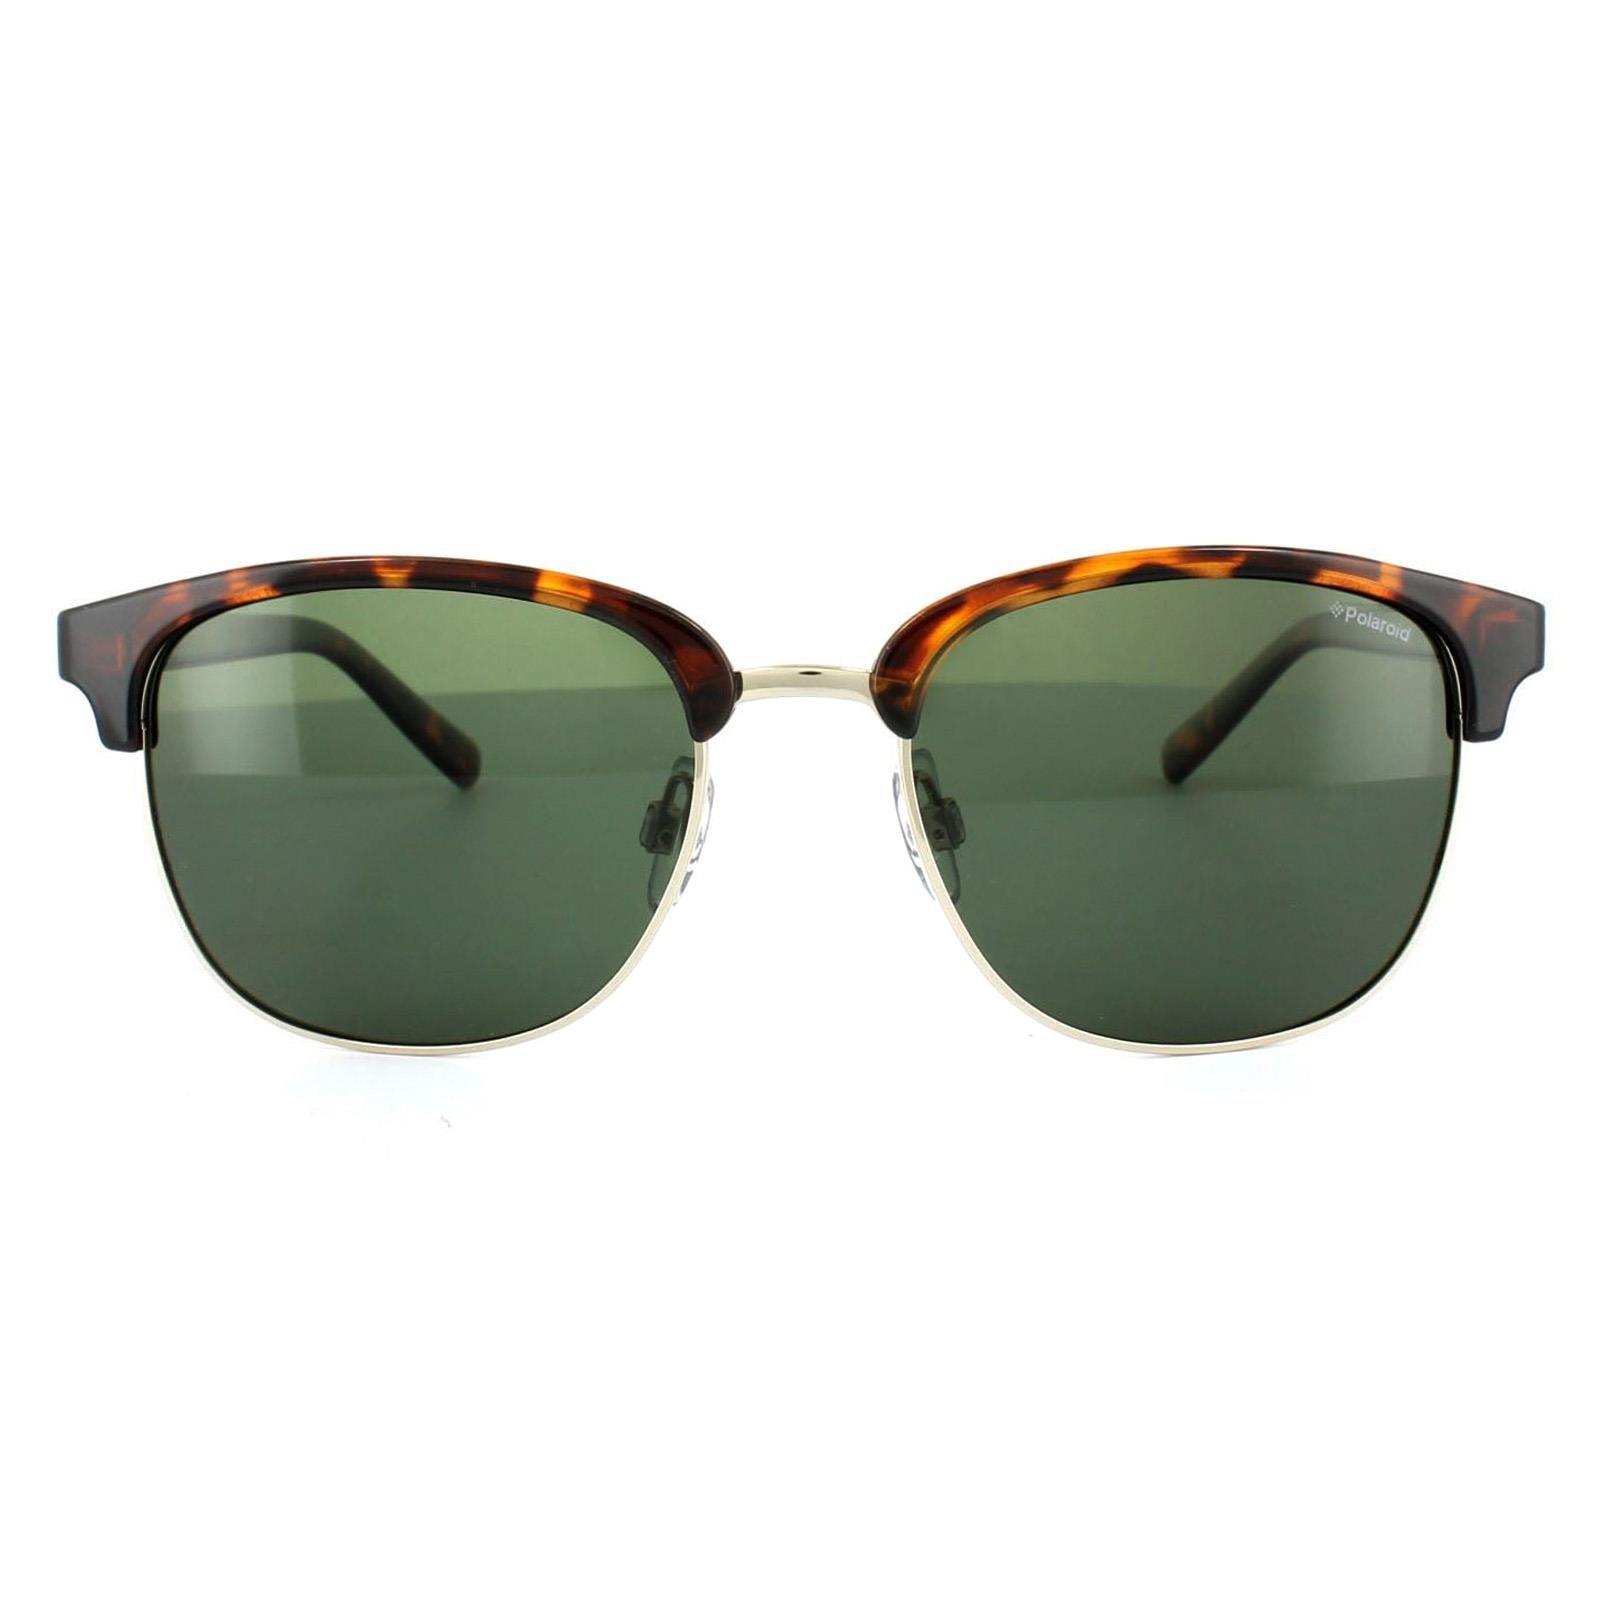 Круглые поляризованные солнцезащитные очки зеленого цвета Havana Polaroid, коричневый polaroid 1017 s 3yg h8 60